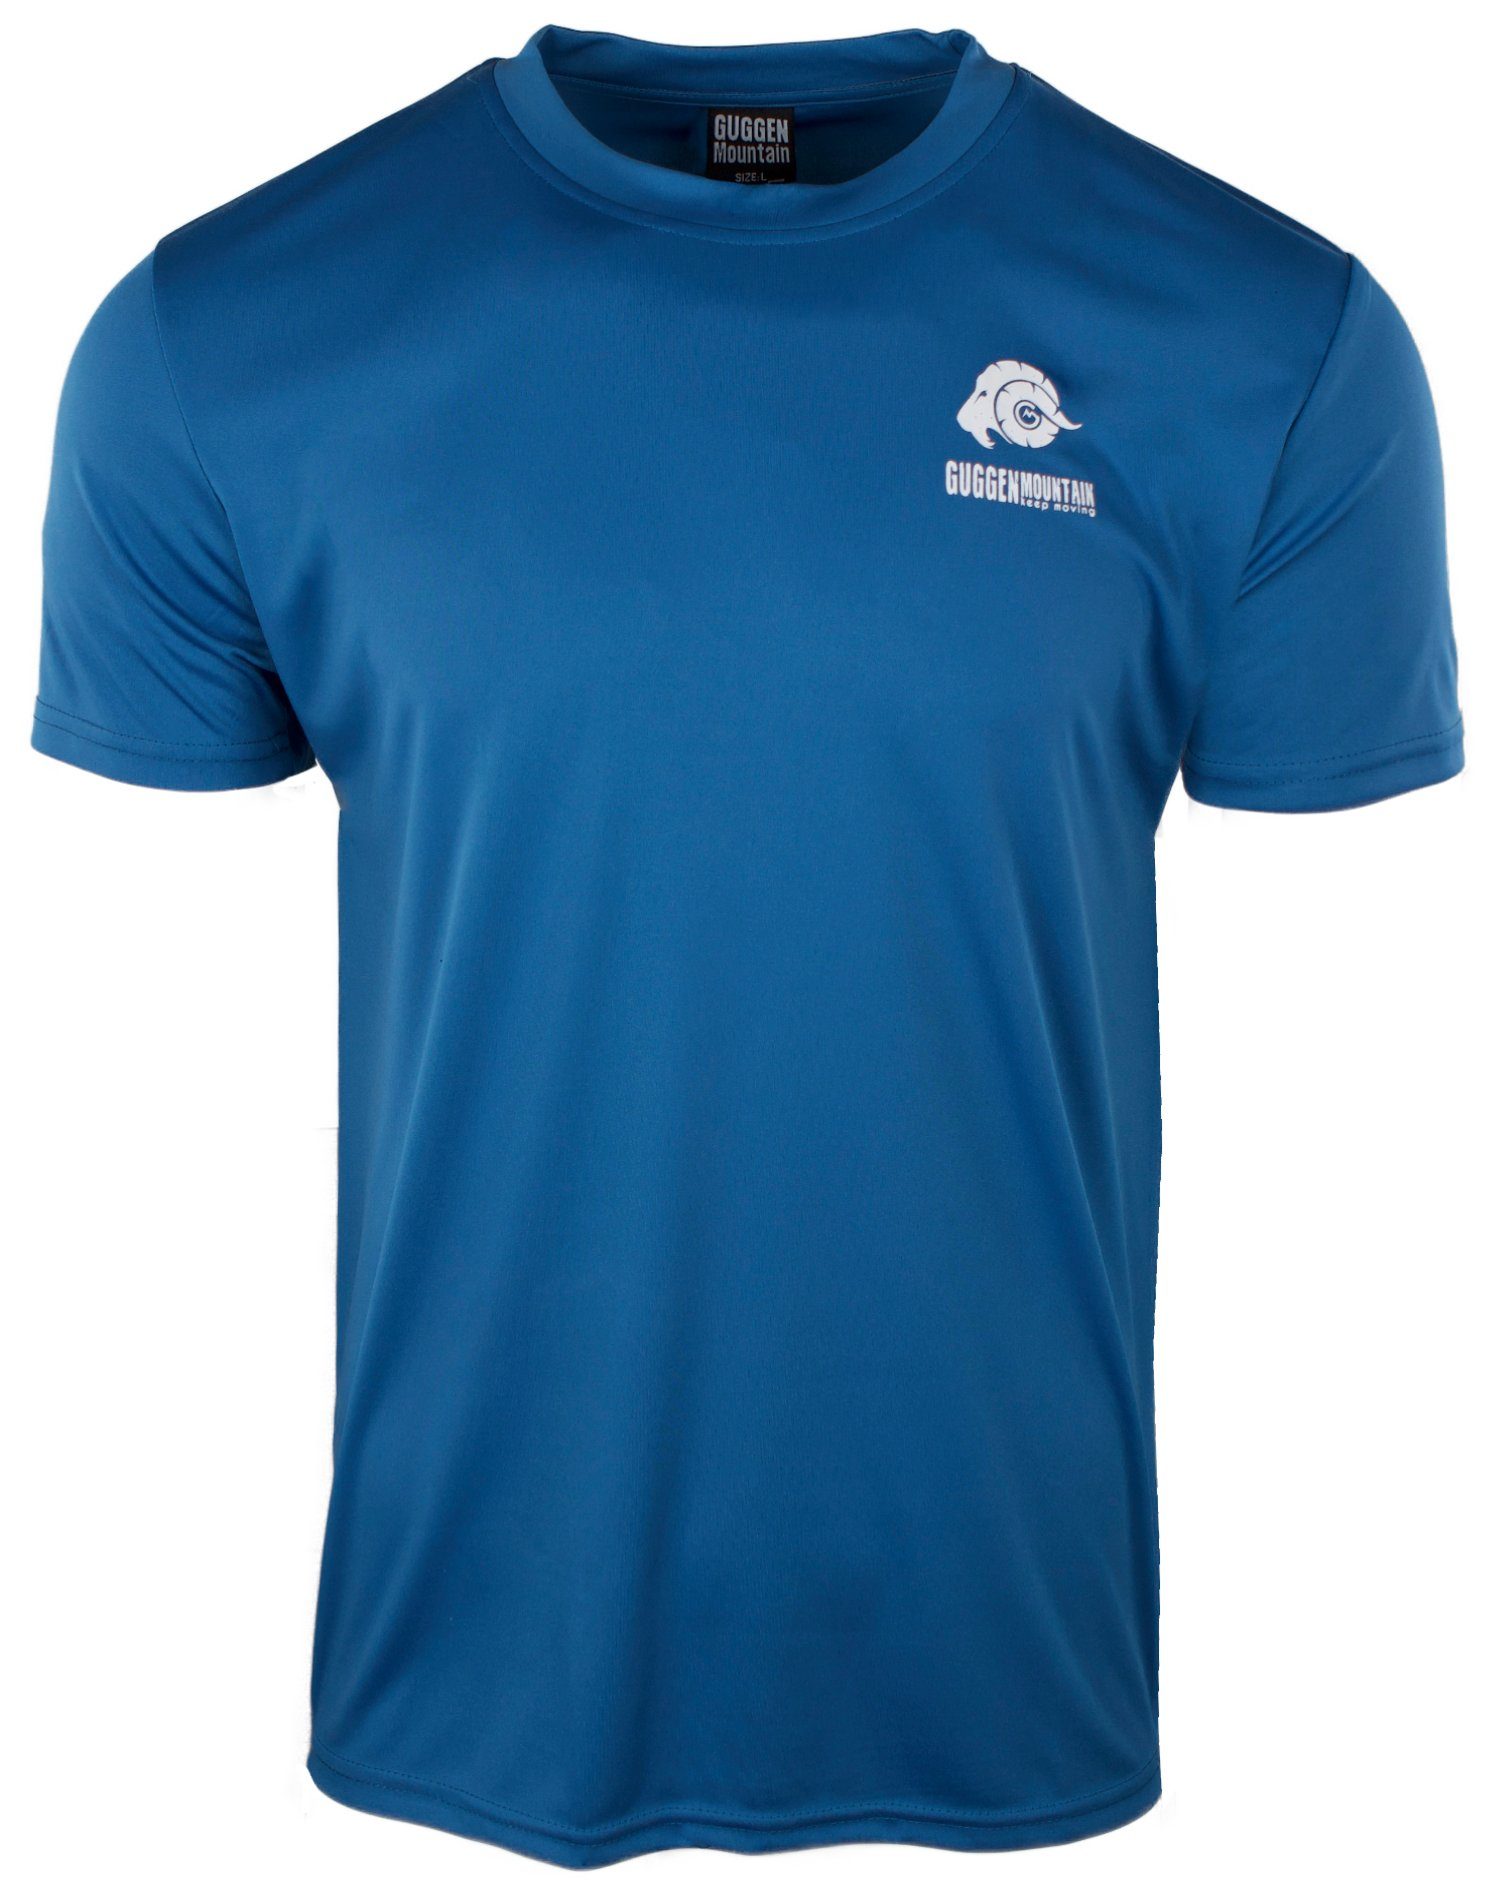 Funktionsshirt Funktionsshirt FW04 Kurzarm Sportshirt Logo in Blau-OHNE-Logo Unifarben, T-Shirt Herren Mountain GUGGEN